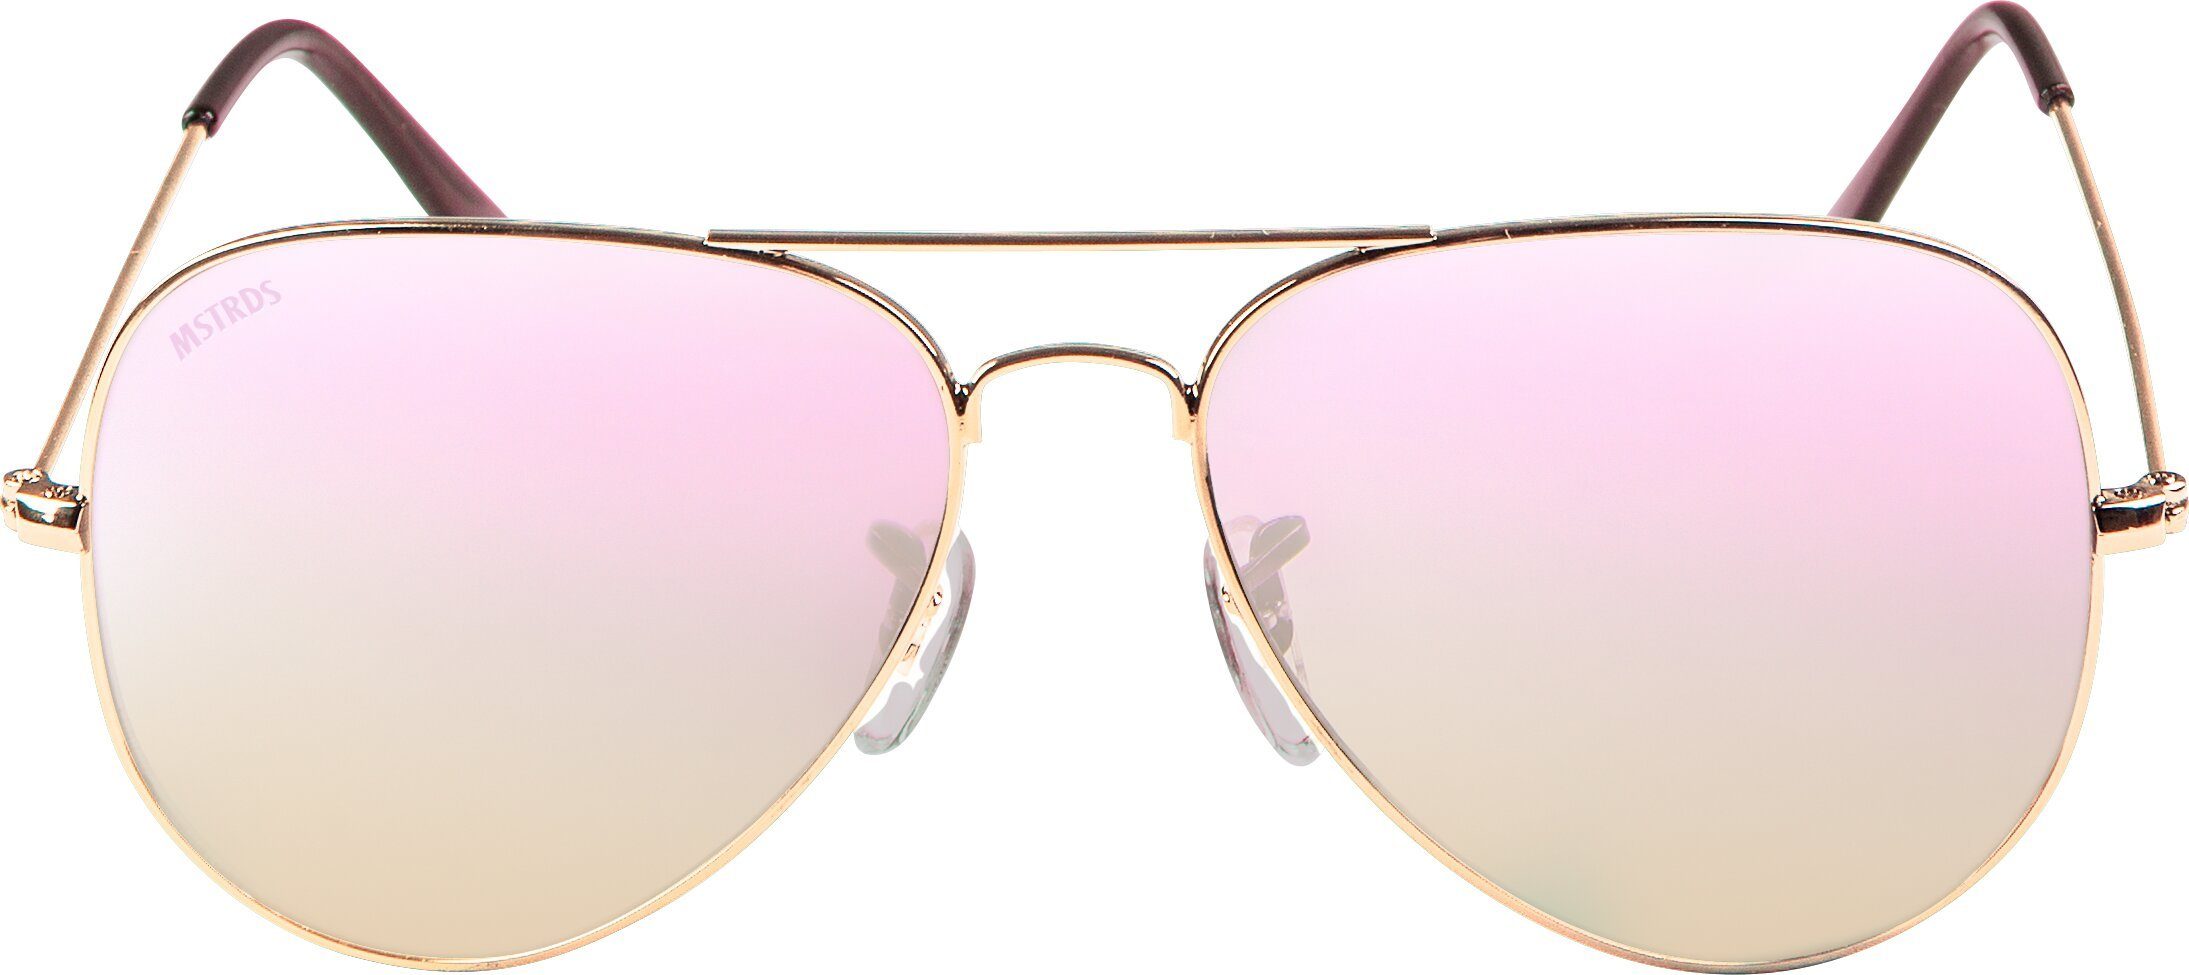 gold/rosé Sunglasses Accessoires PureAv MSTRDS Sonnenbrille